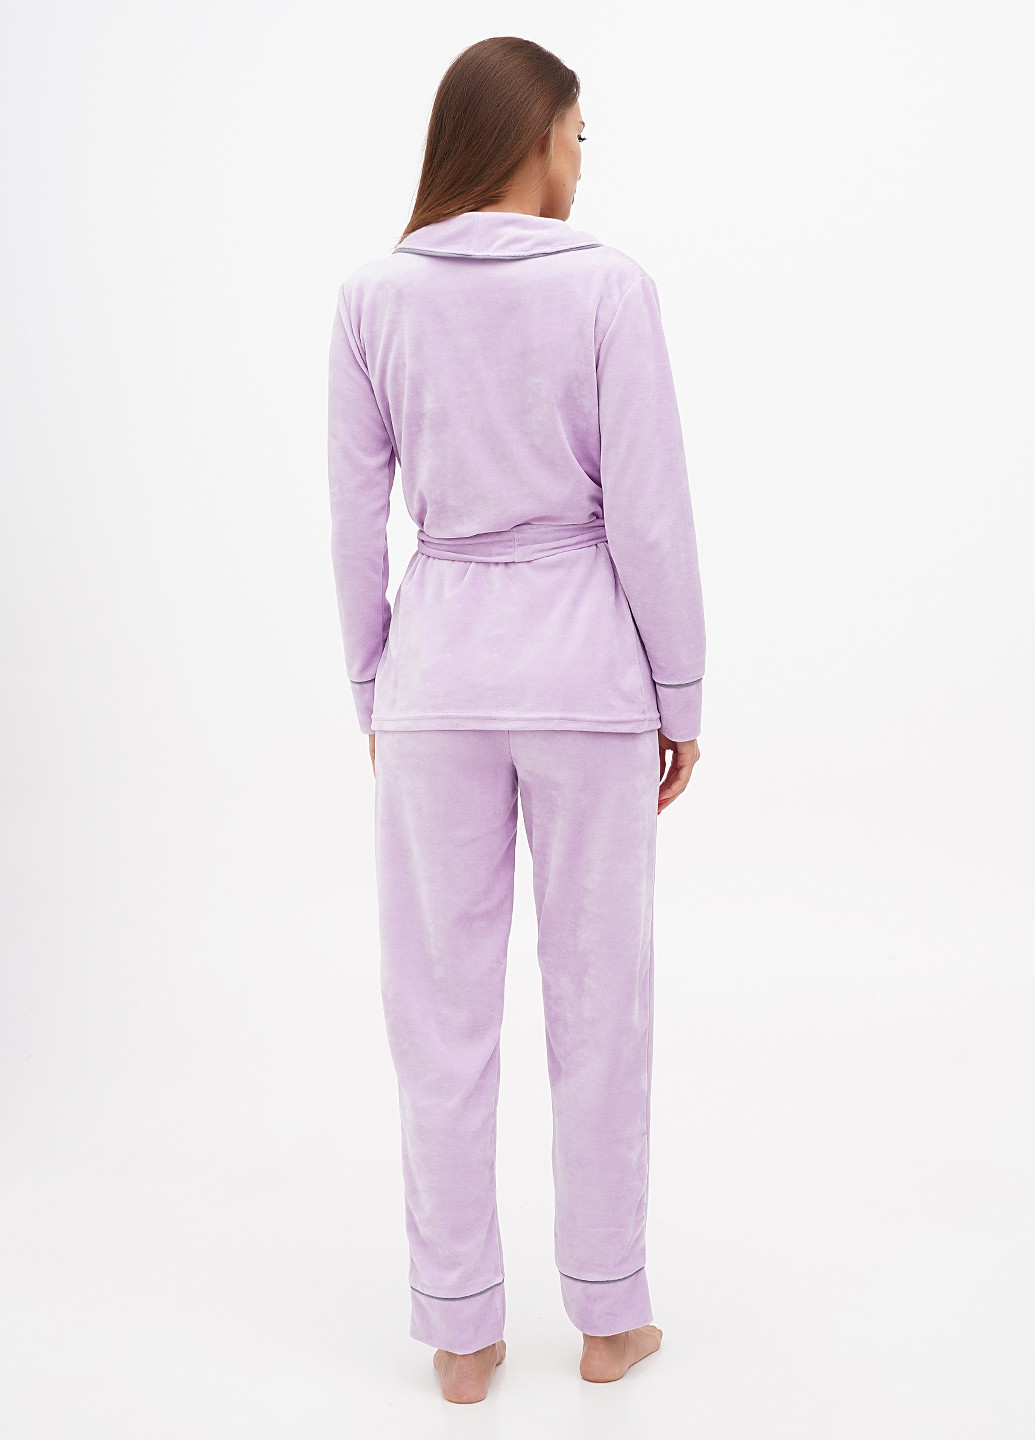 Сиреневая всесезон пижама (кофта, брюки) кофта + брюки Lucci